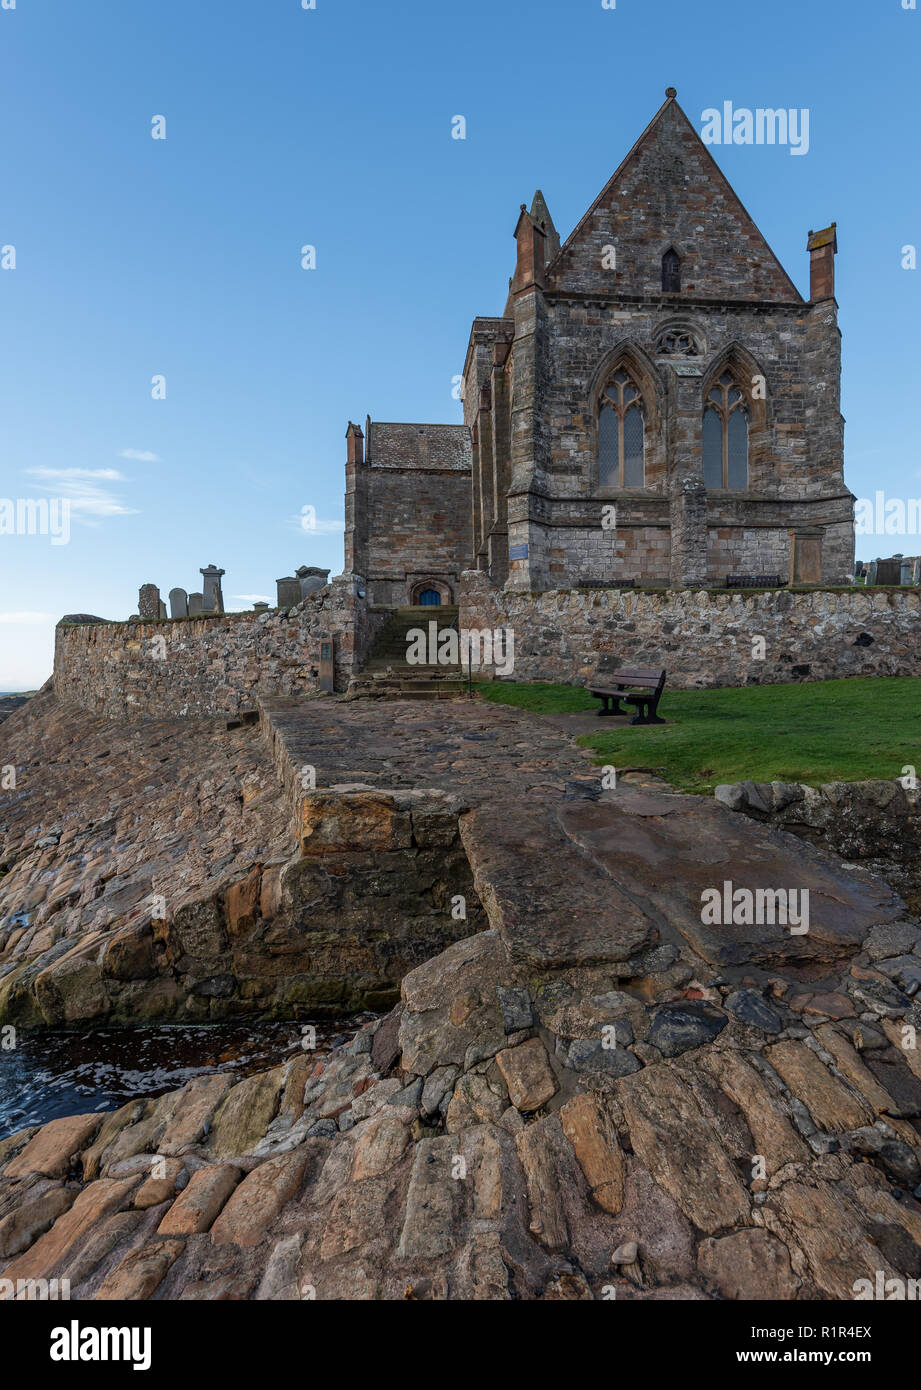 St Monans iglesia data de tiempos medievales y está situado en una posición aislada en el borde mismo del mar del Norte en el East Neuk de Fife, Scotlan Foto de stock